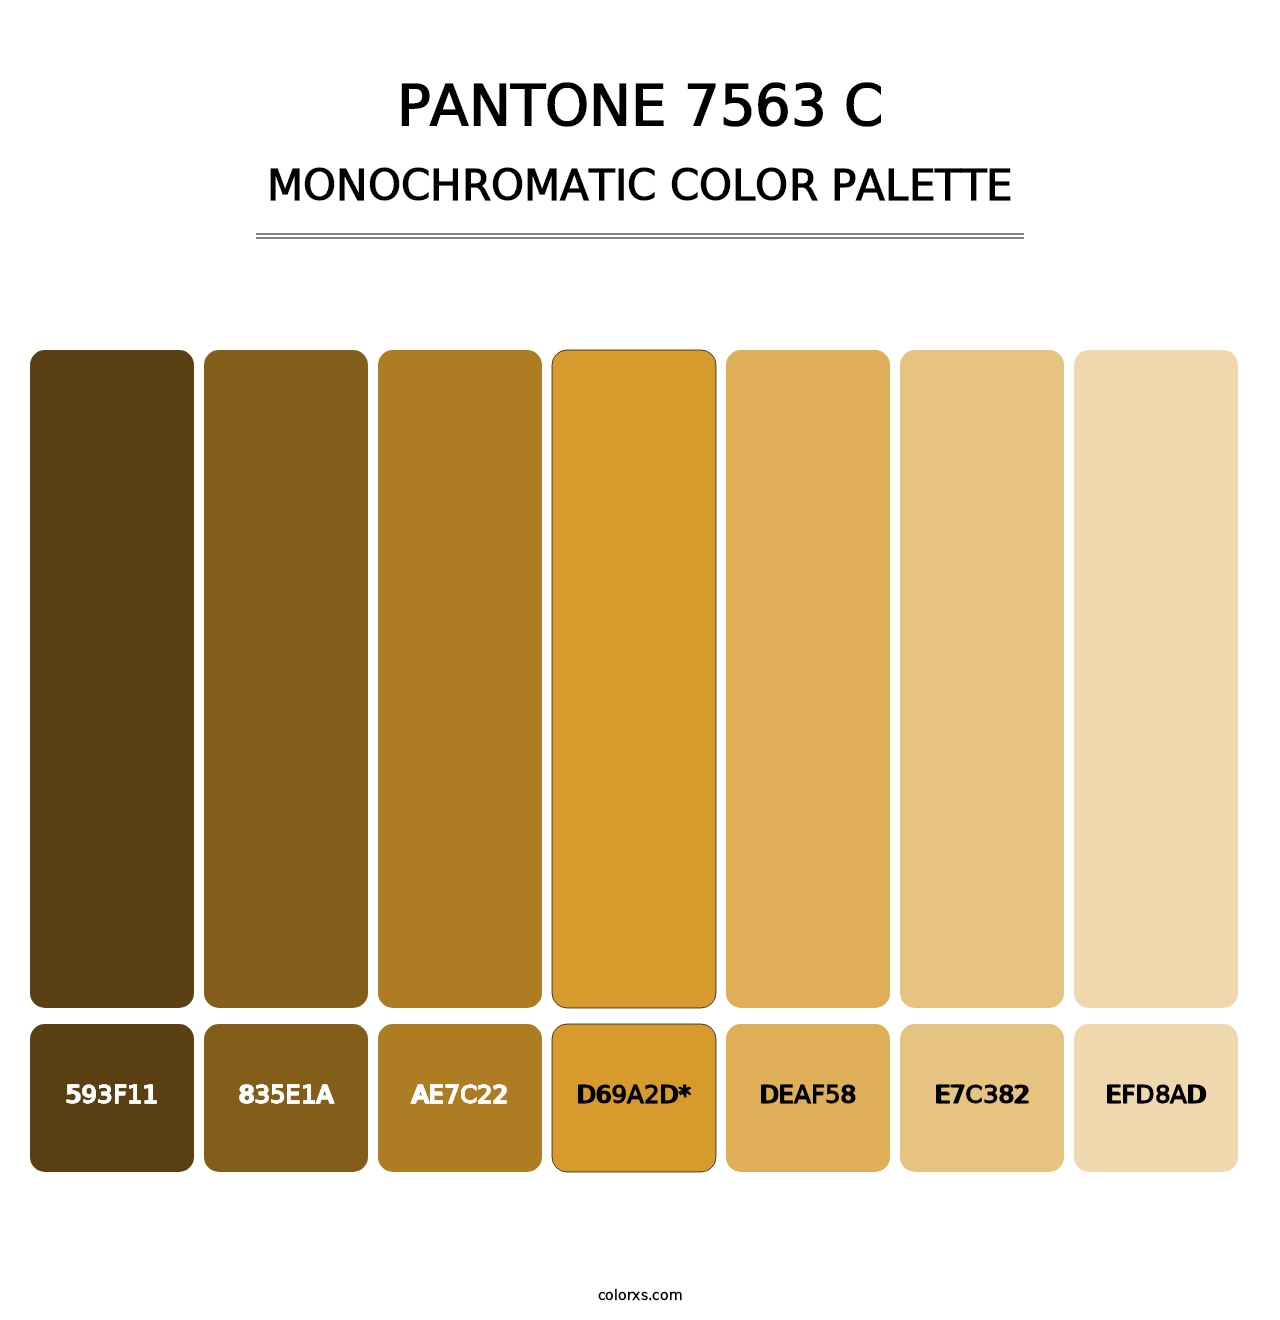 PANTONE 7563 C - Monochromatic Color Palette